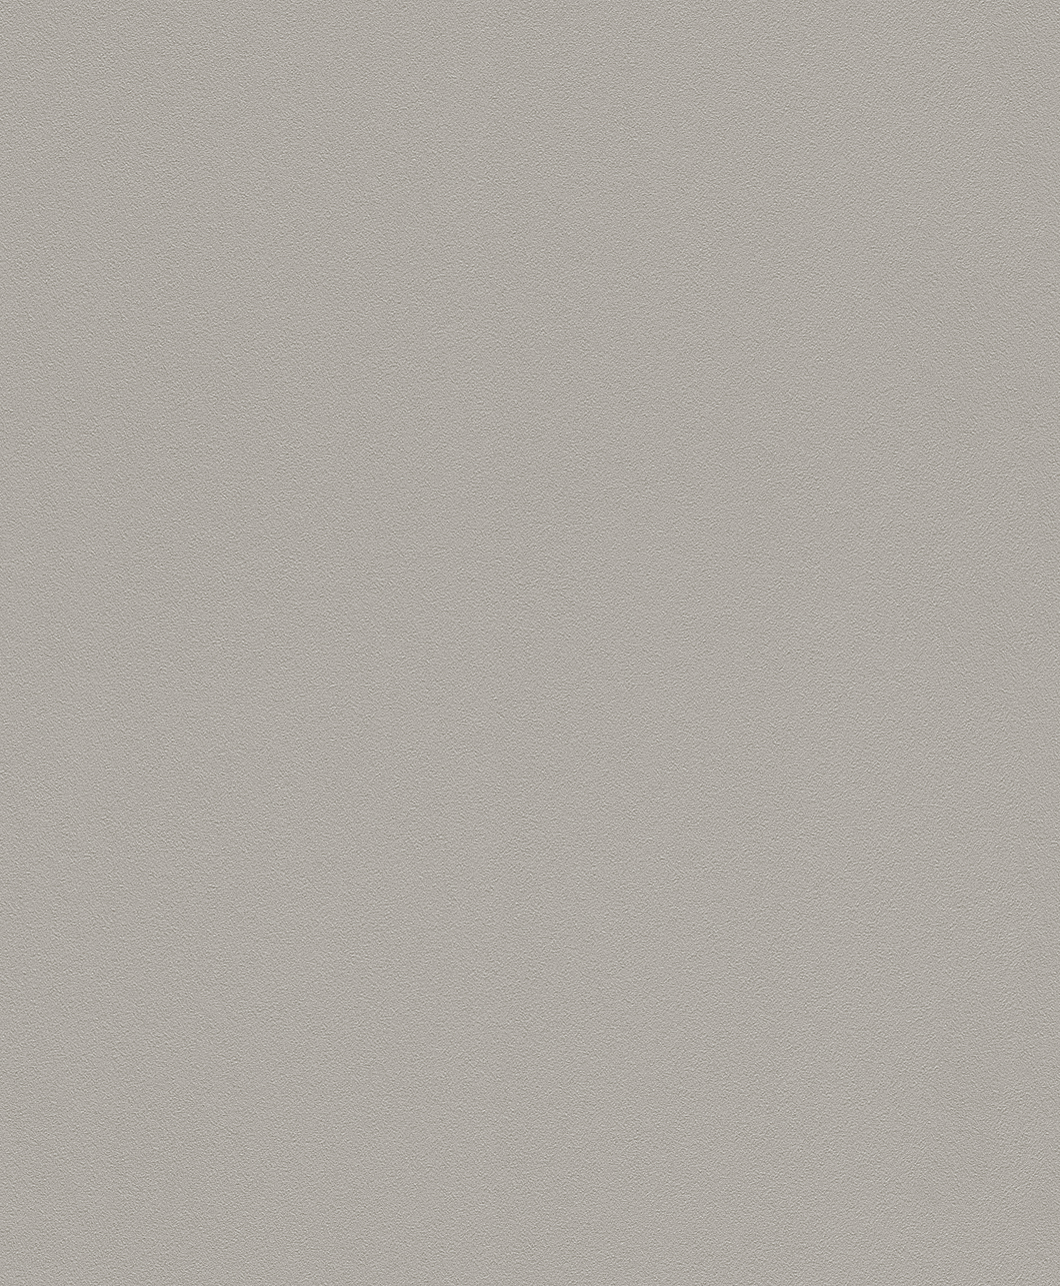 Egyszínű ezüstszürke-barna modern tapéta